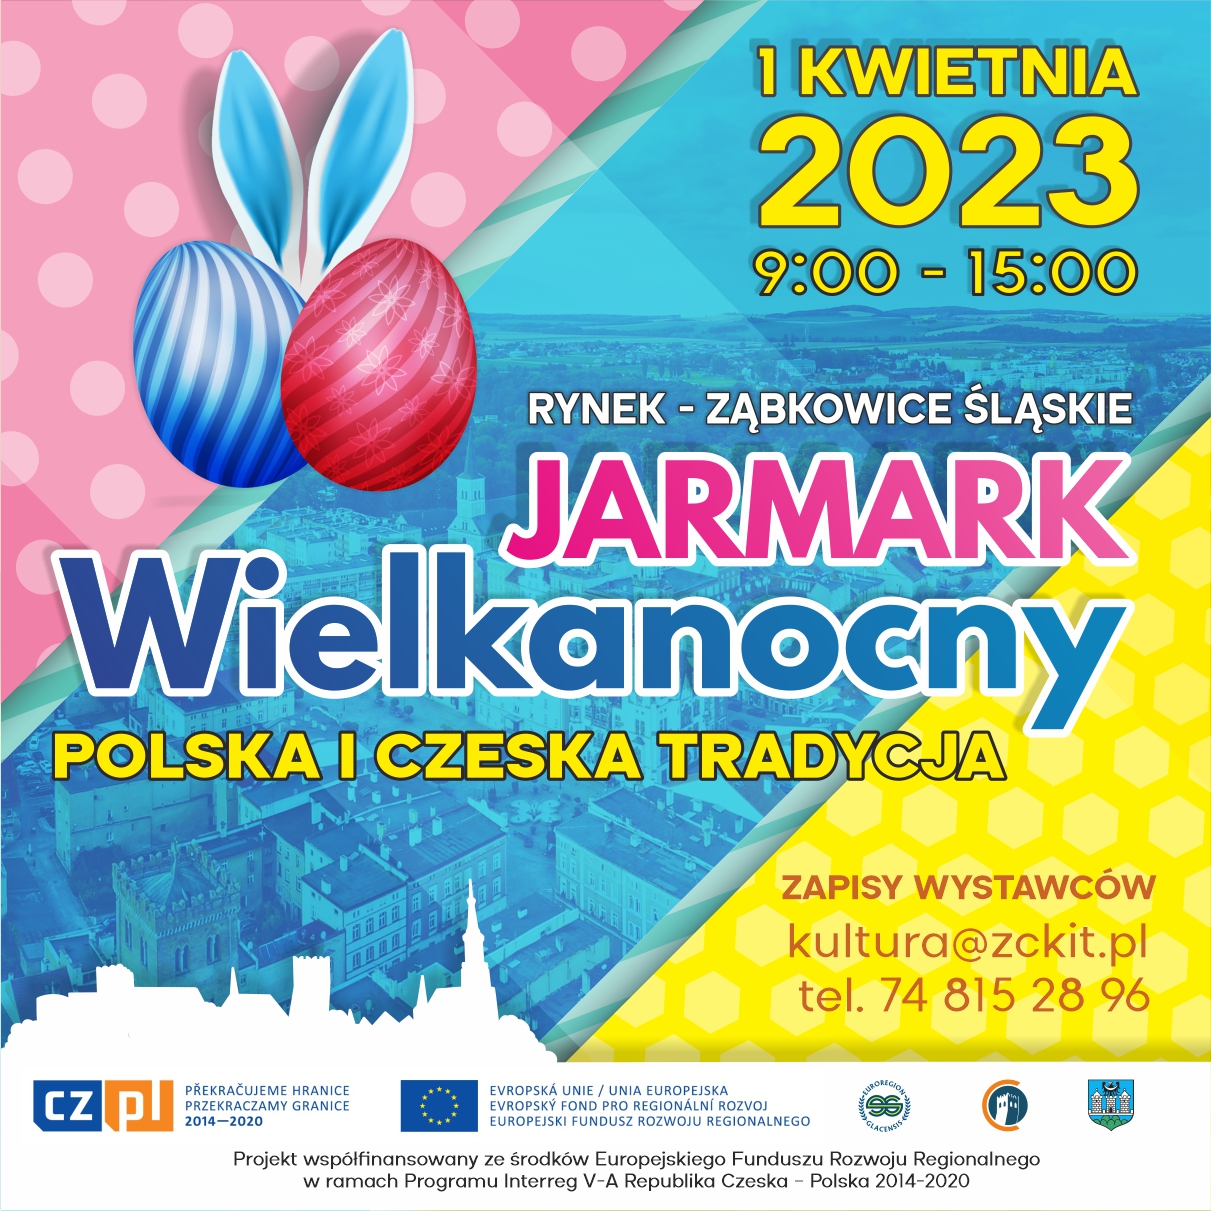 Plakat informujący o Jarmarku Wielkanocnym w Ząbkowicach Śląskich 1 kwietnia 2023 od godziny 9:00 do 15:00.